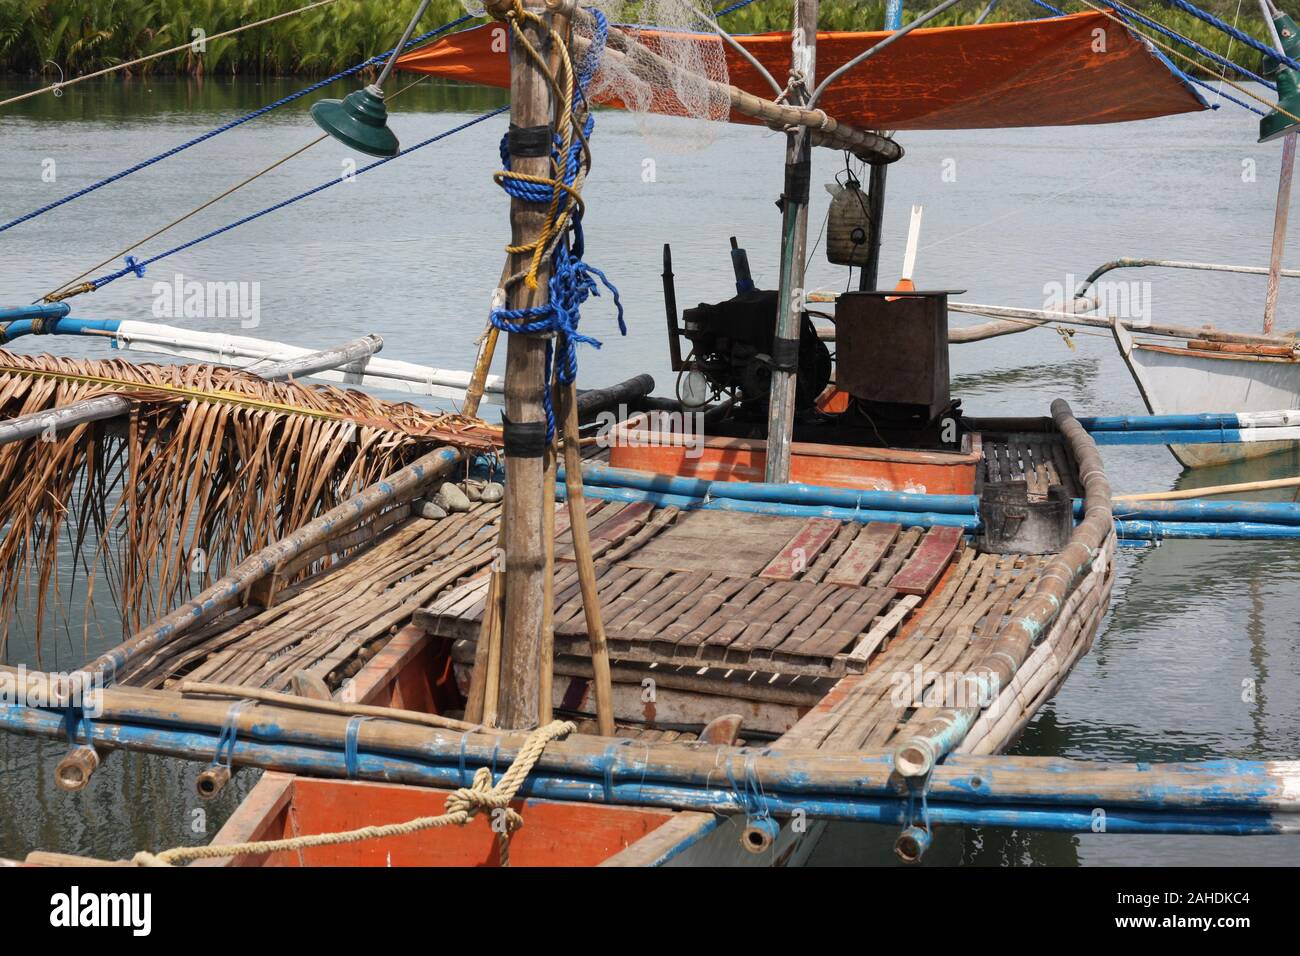 Outrigger bankas, tradicionales barcos de madera utilizada por los pescadores artesanales en las Filipinas Foto de stock